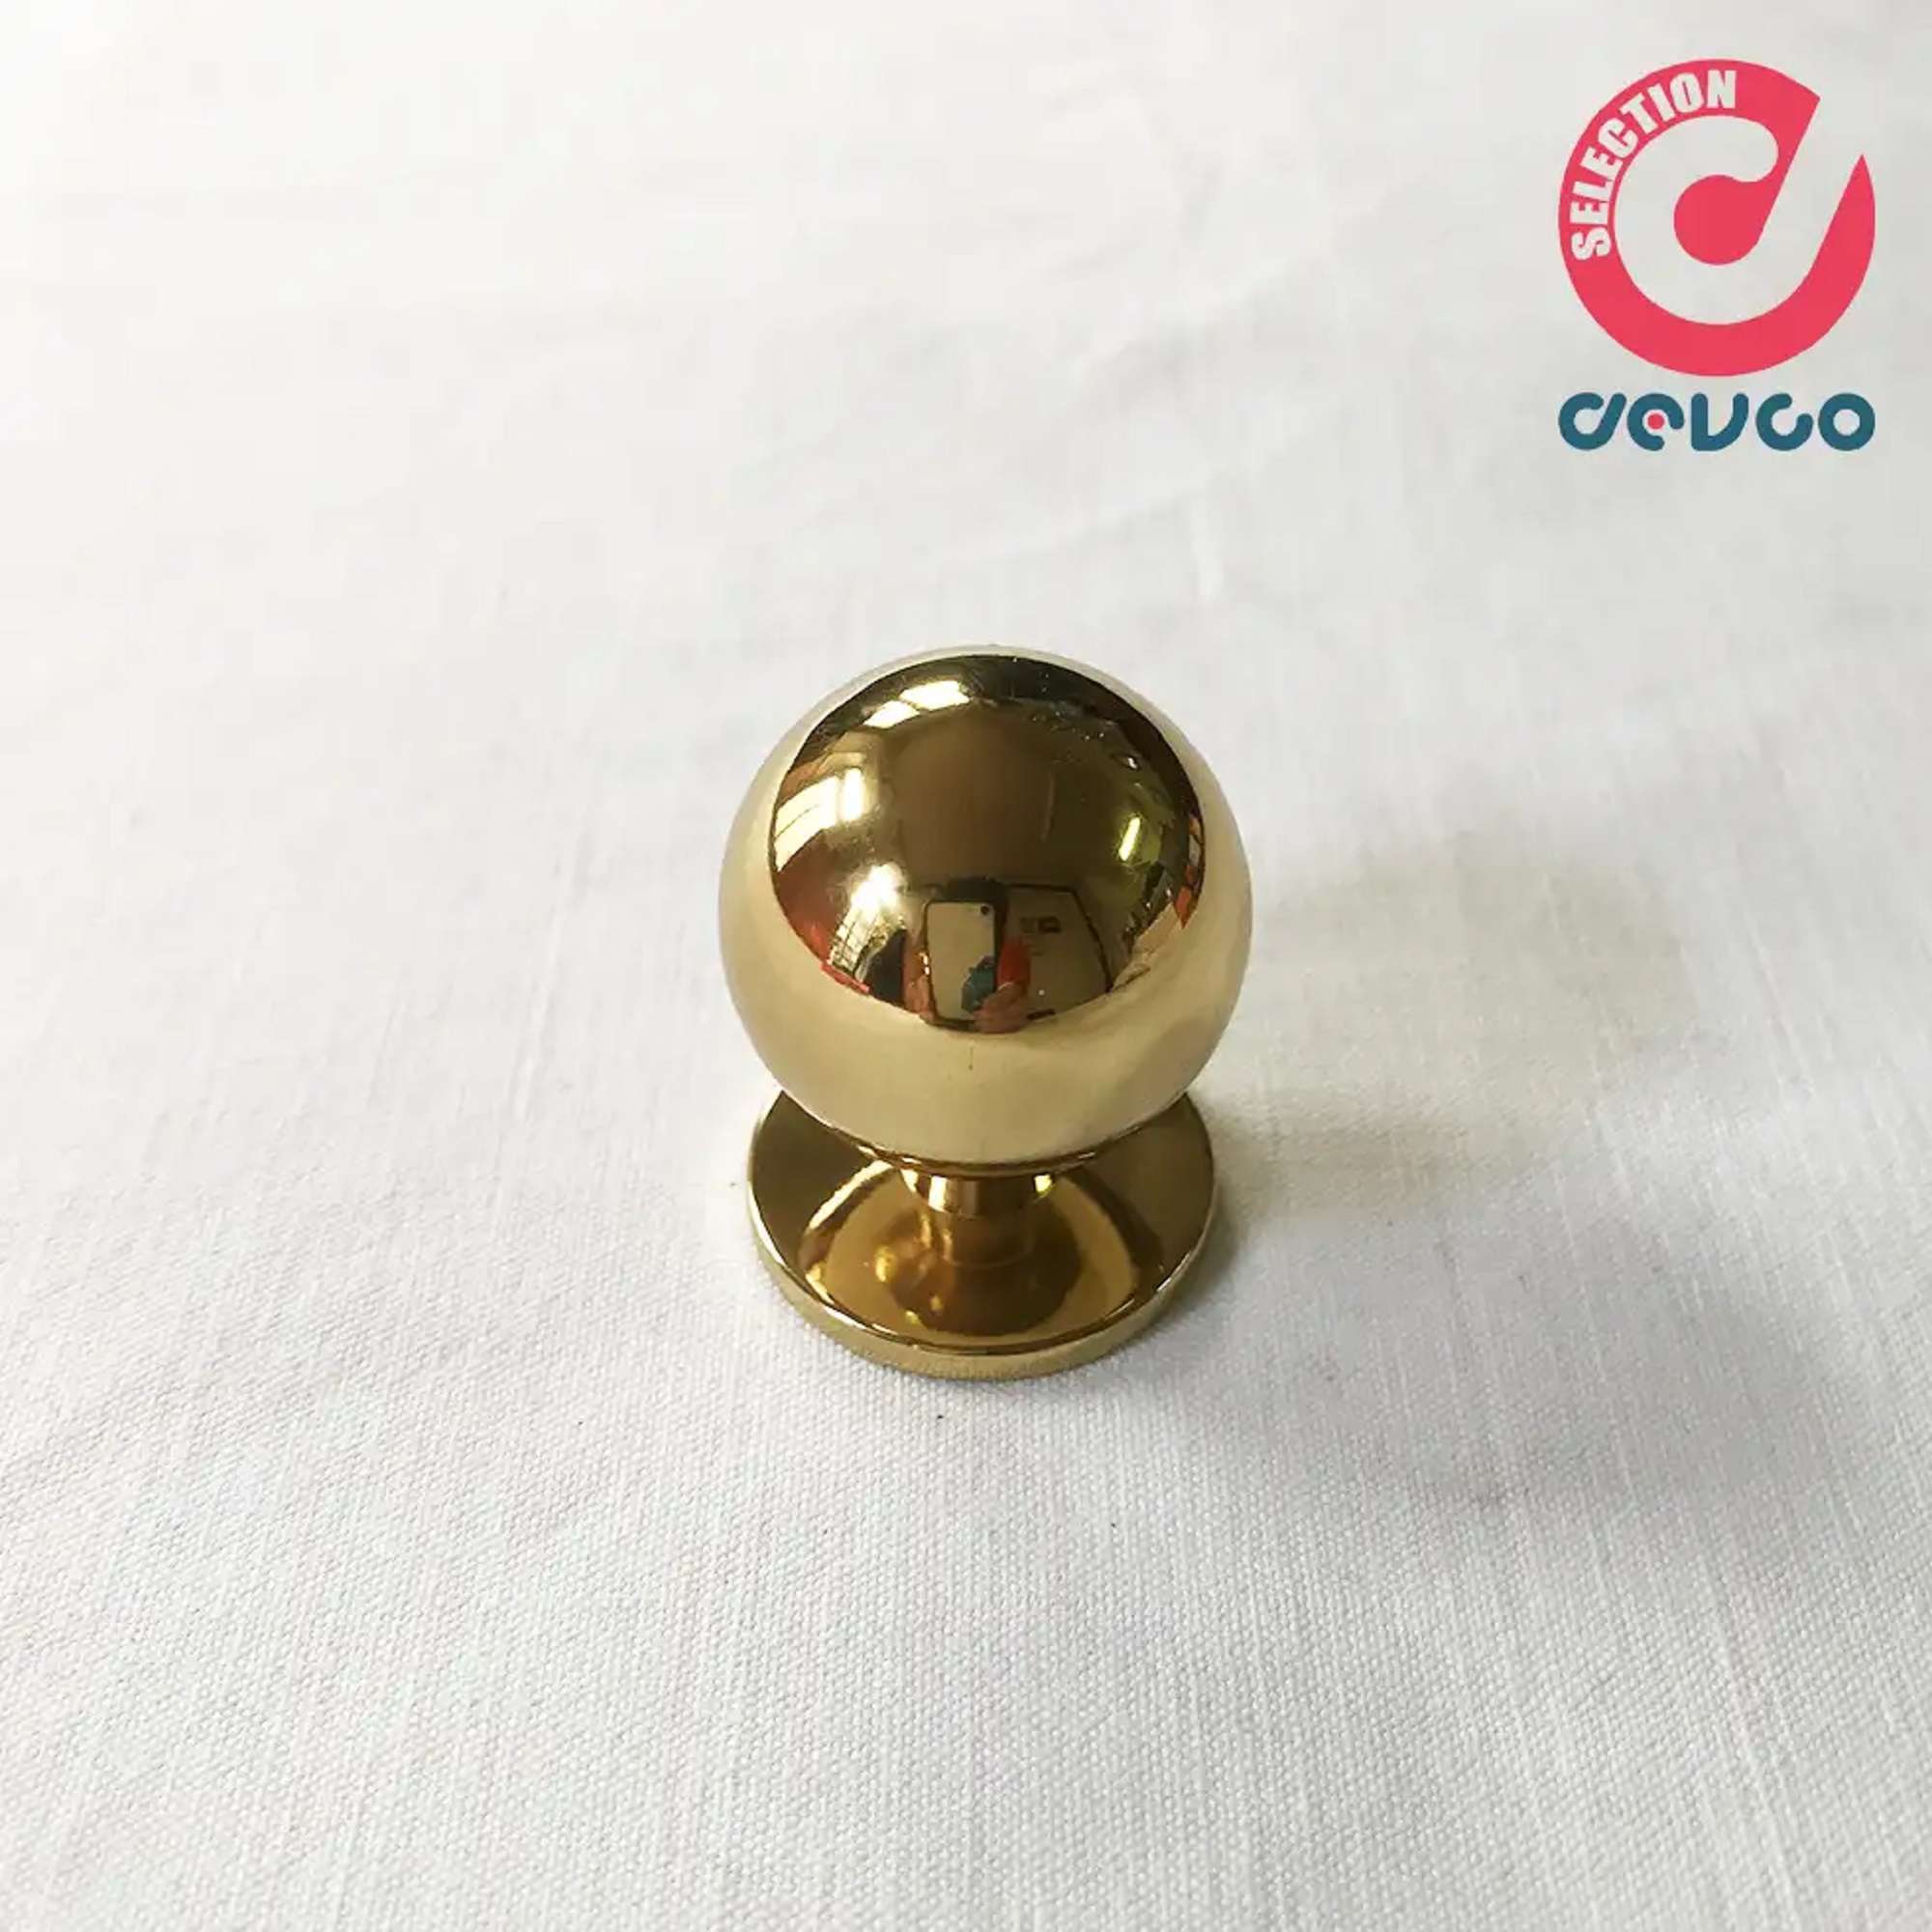 Knob size 20 gold color - Omp Porro - 101 - 20